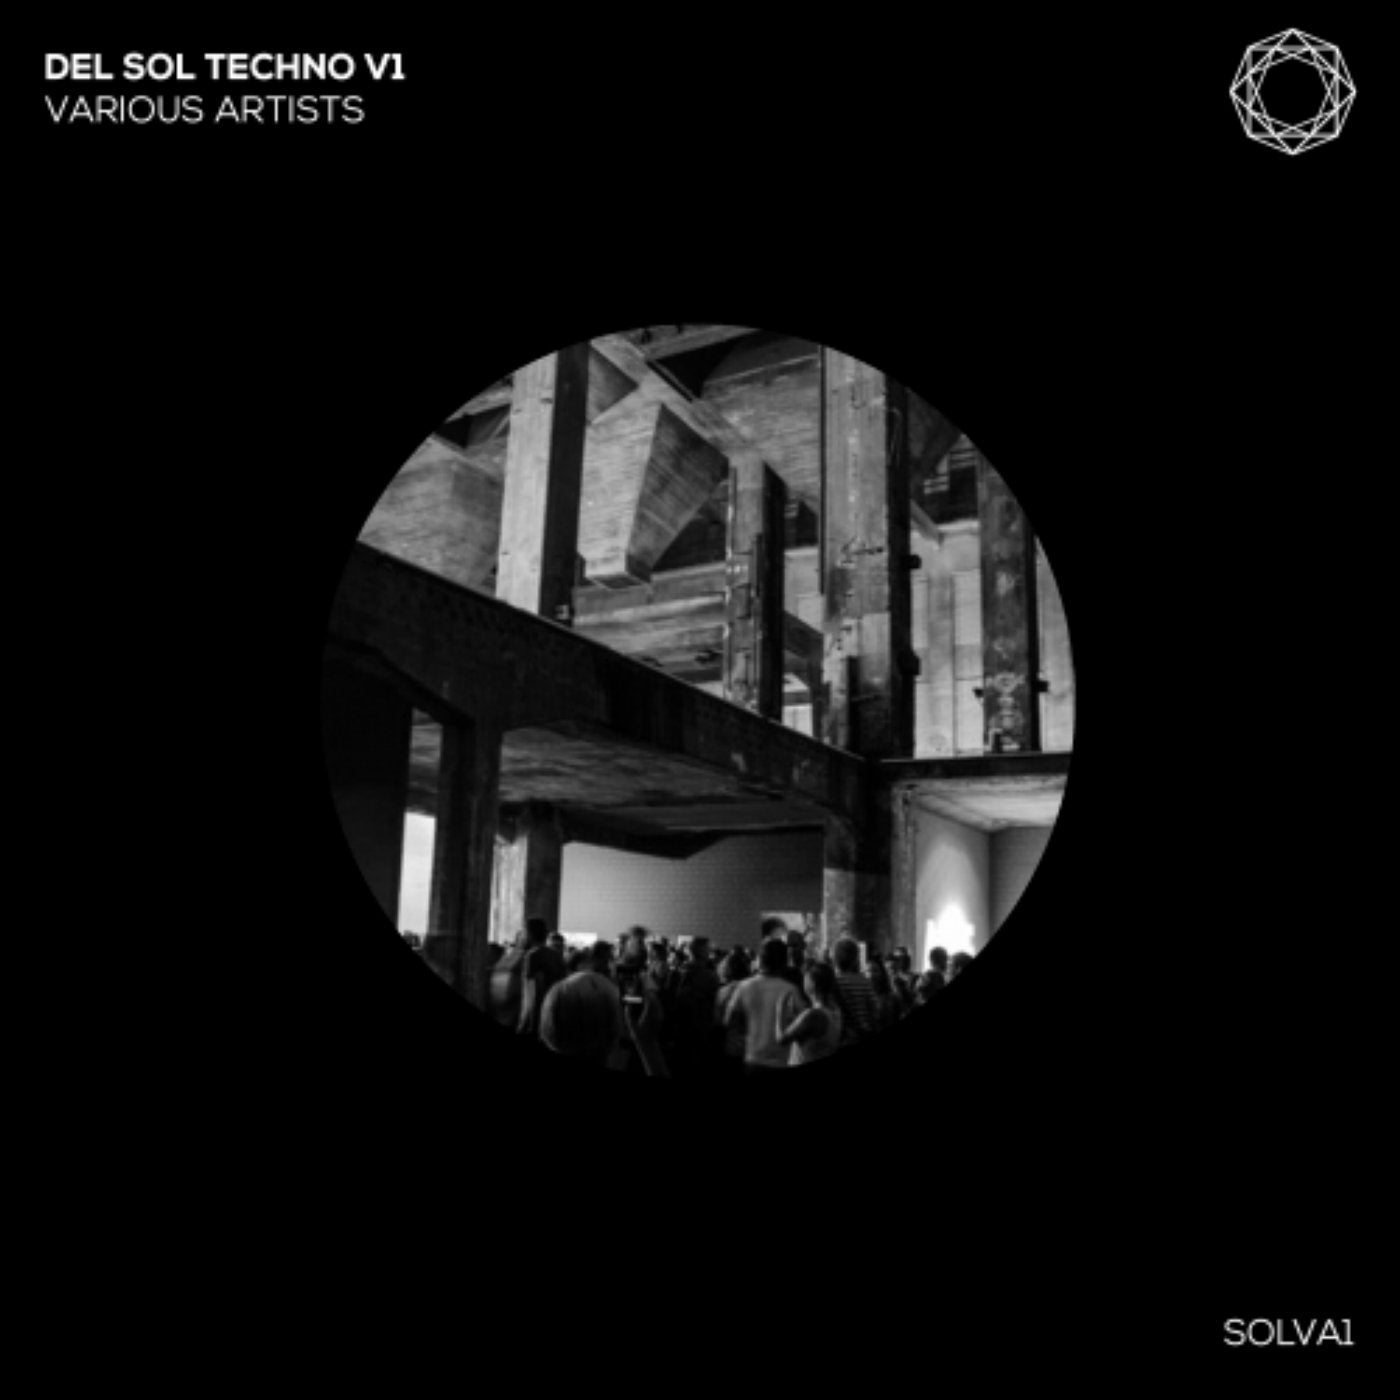 Del Sol Techno V1